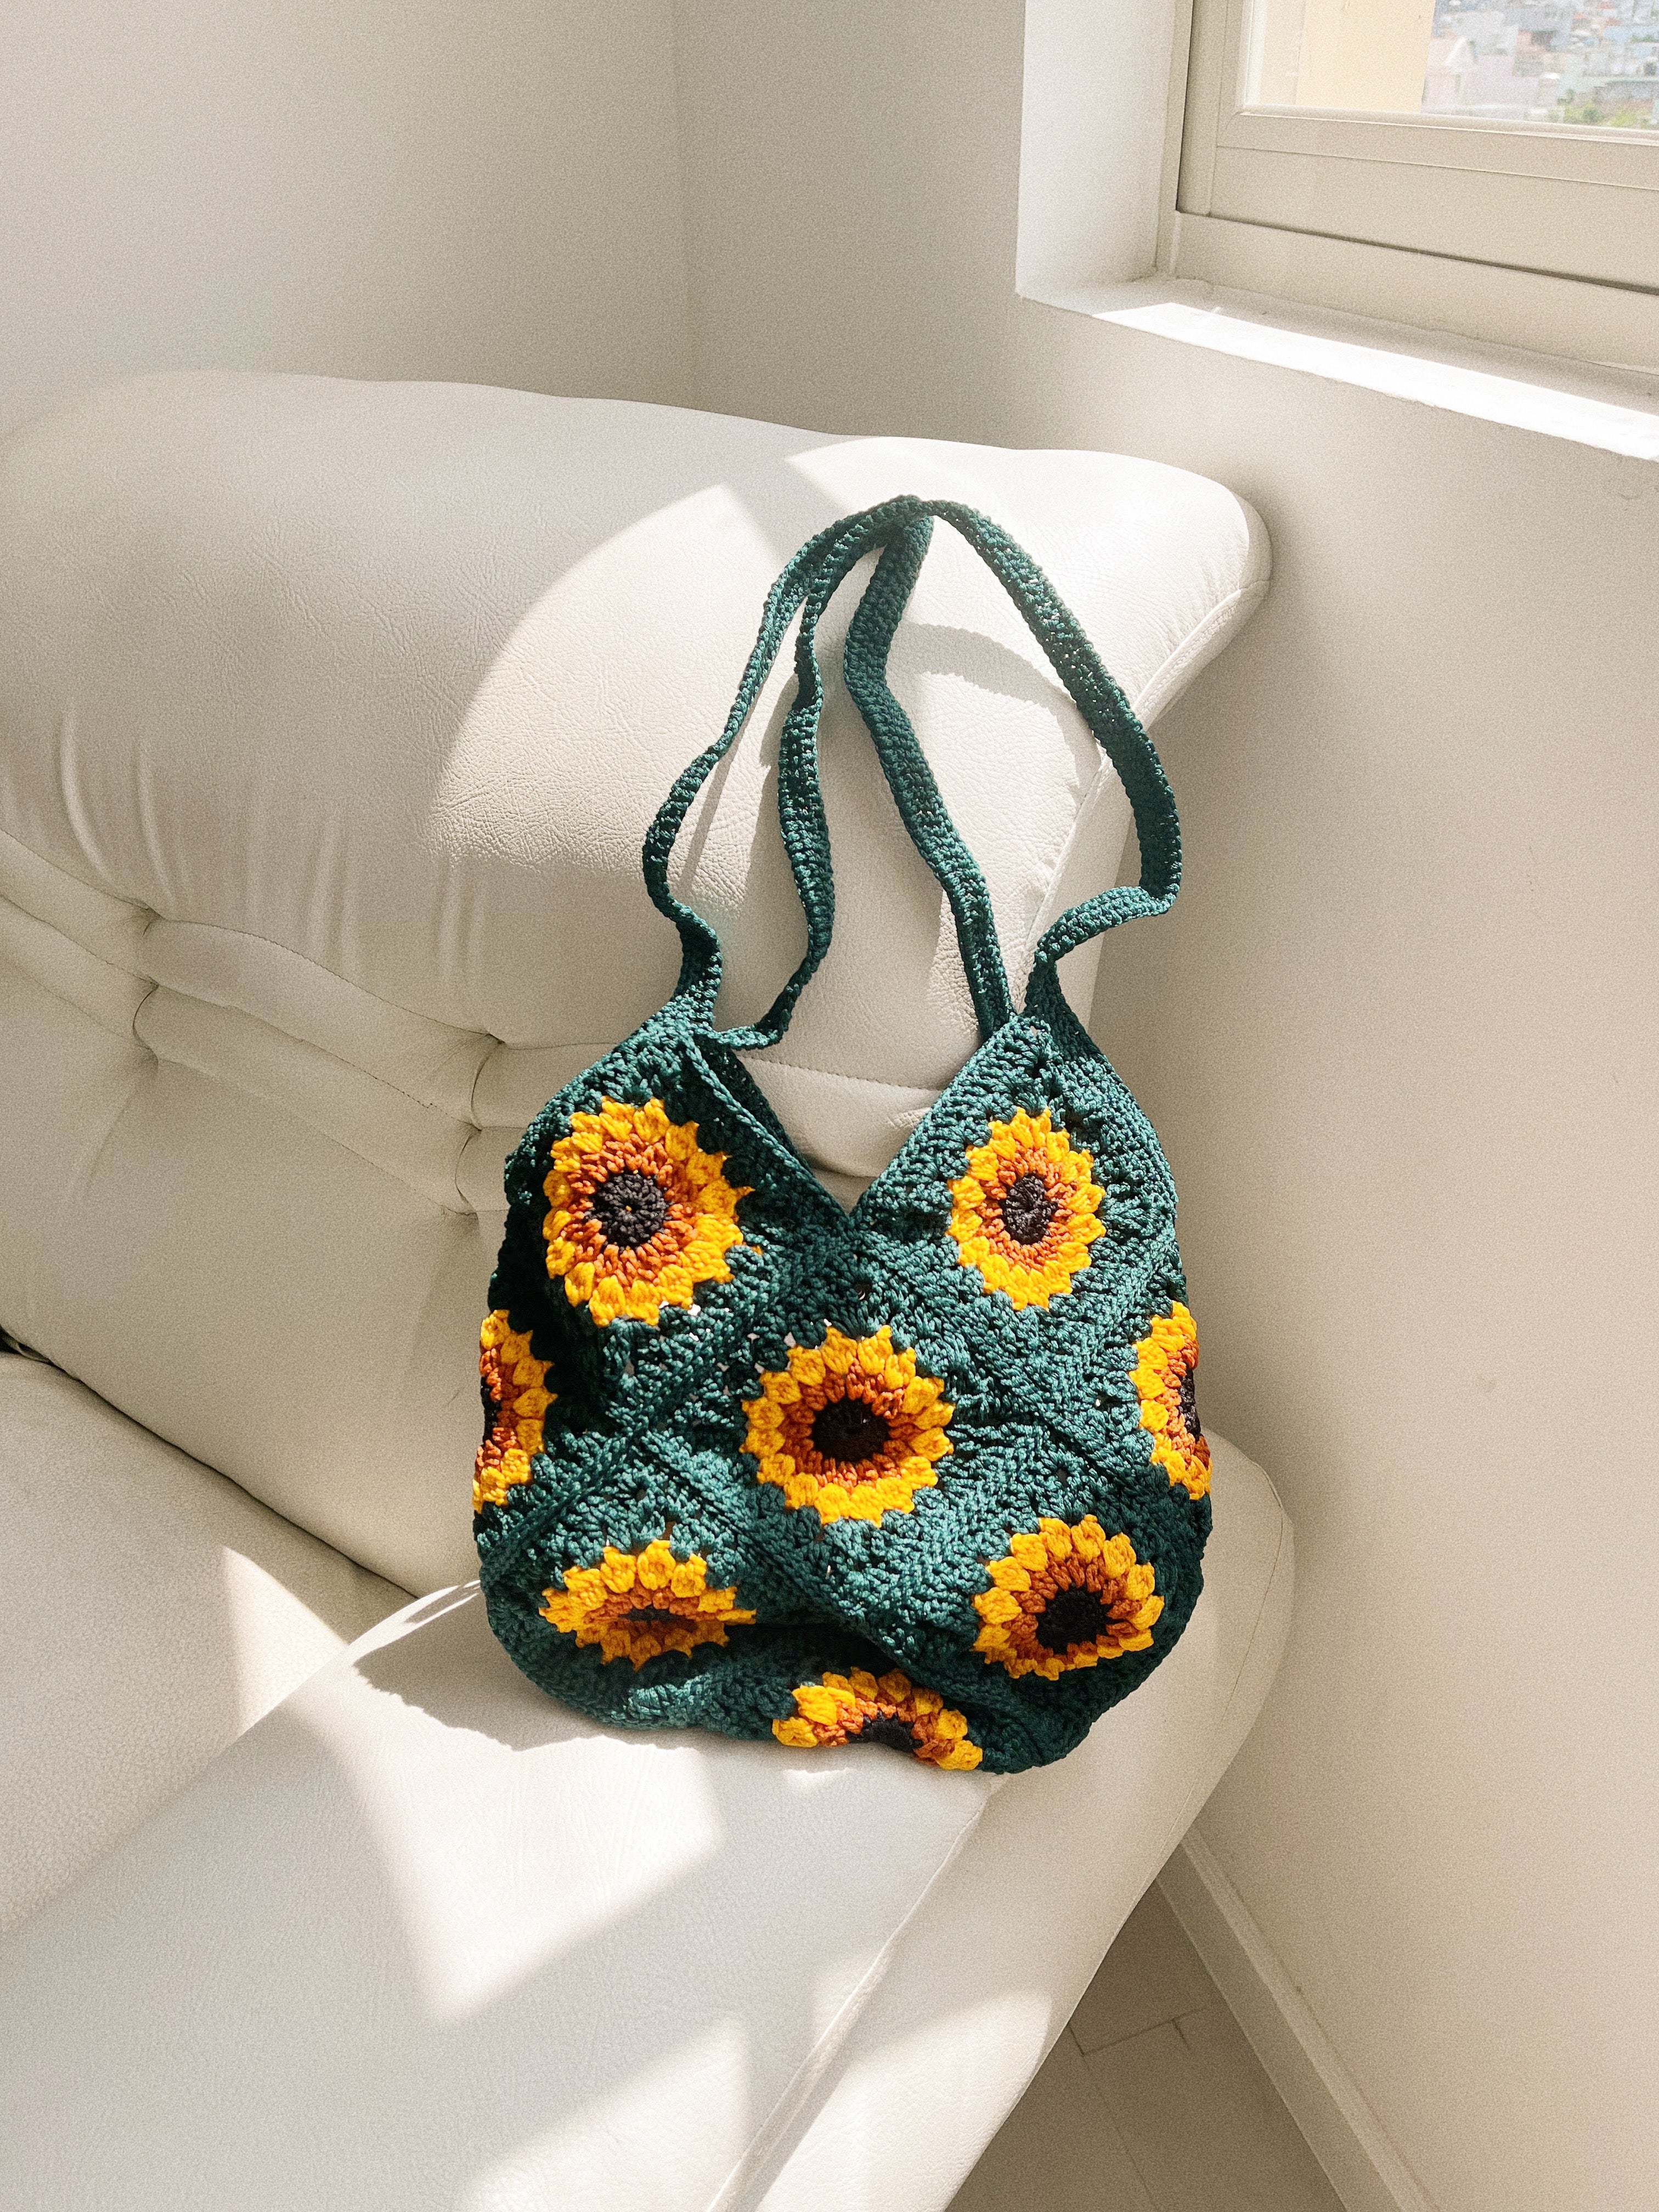 Buy Crochet Sunflower Bag Granny Square Crossbody Sunflower Tote Beach Bag  Boho Style Bag Online in India - Etsy